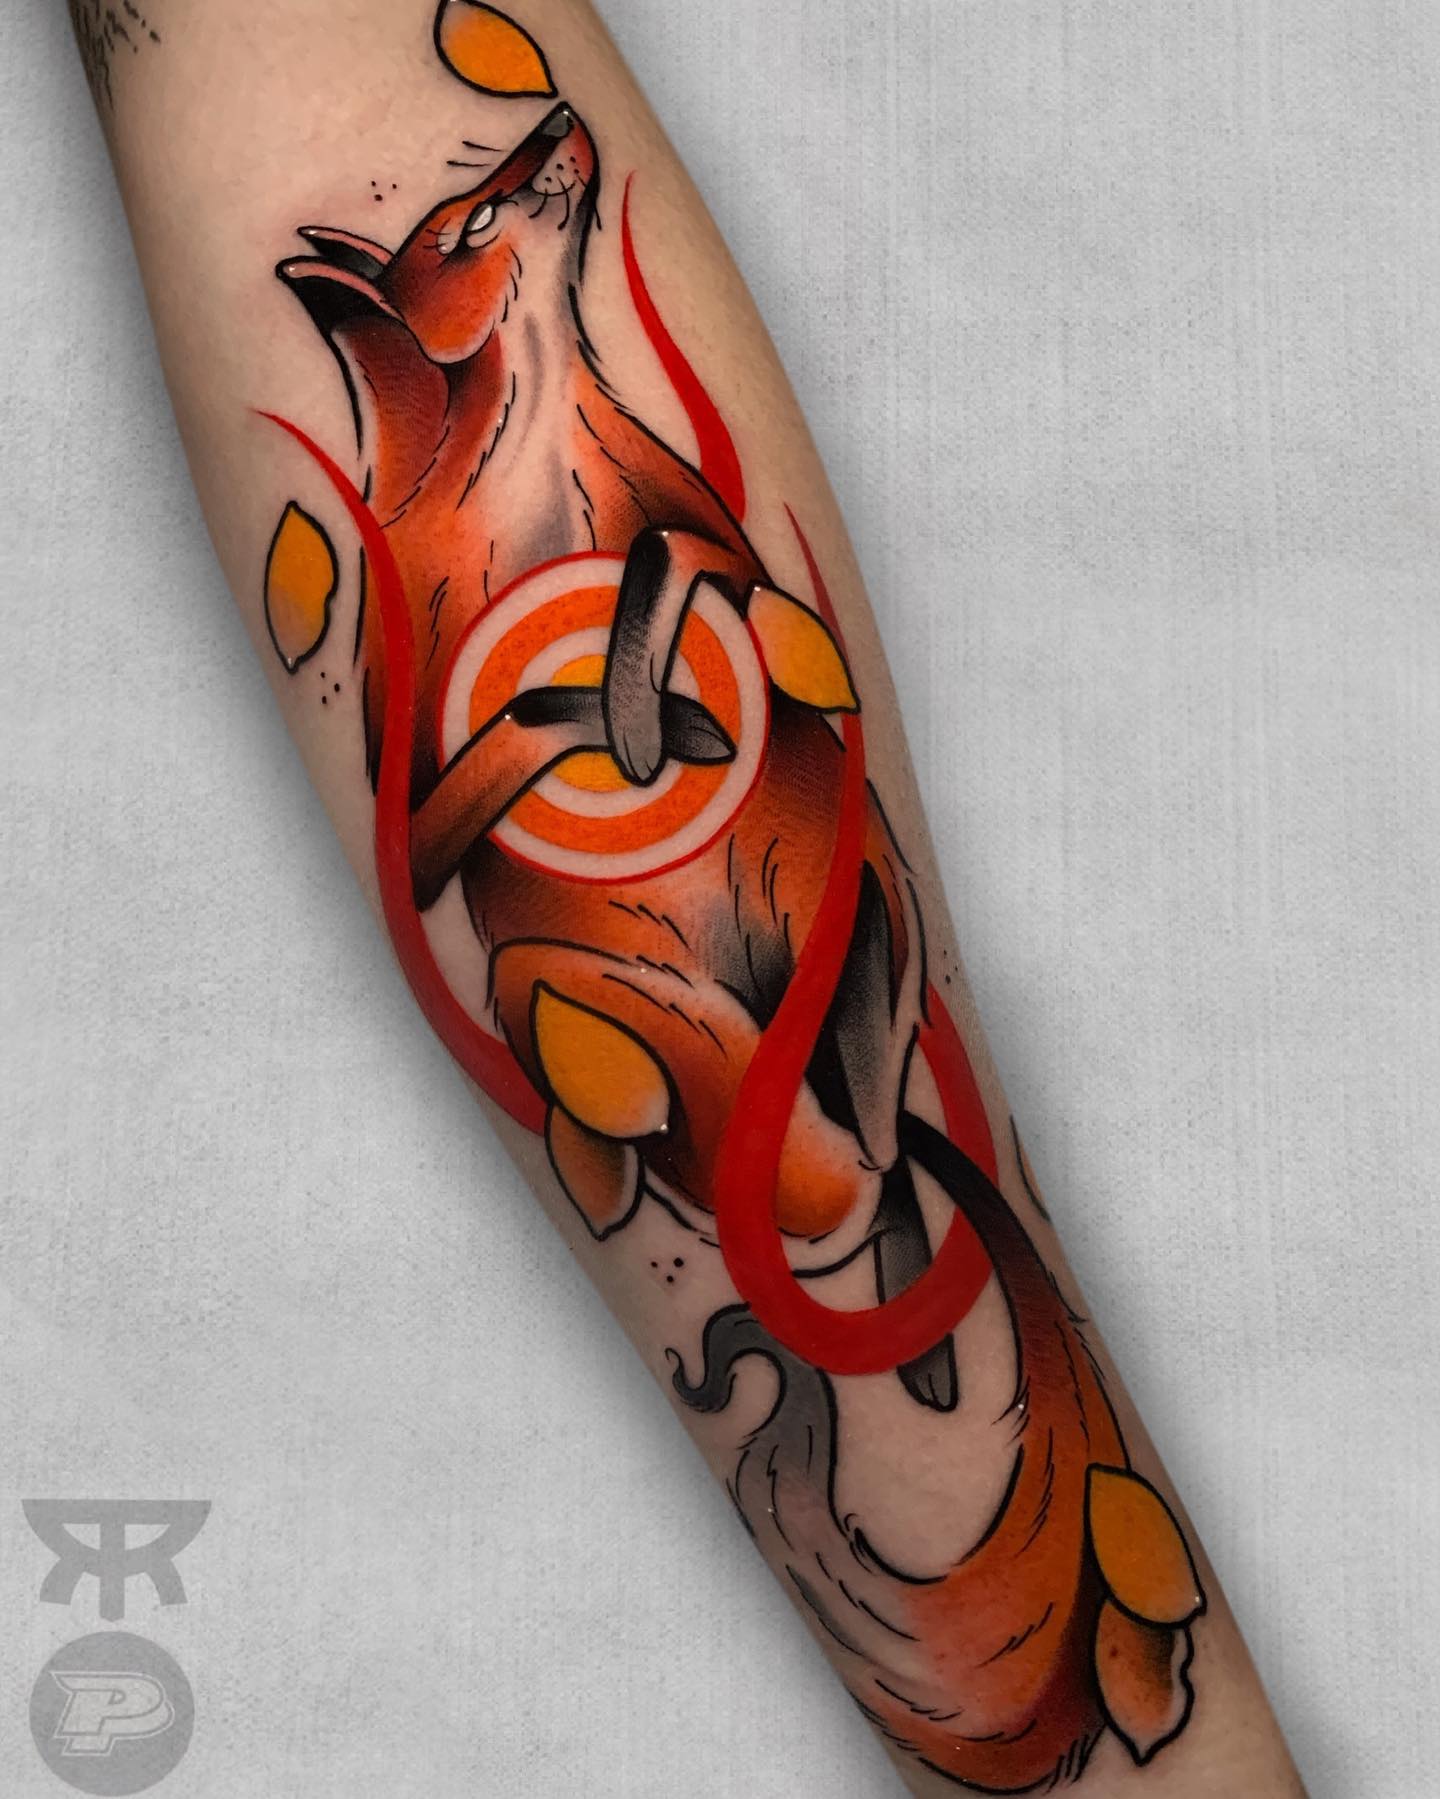 Tatuaje de zorro rojo brillante y naranja.